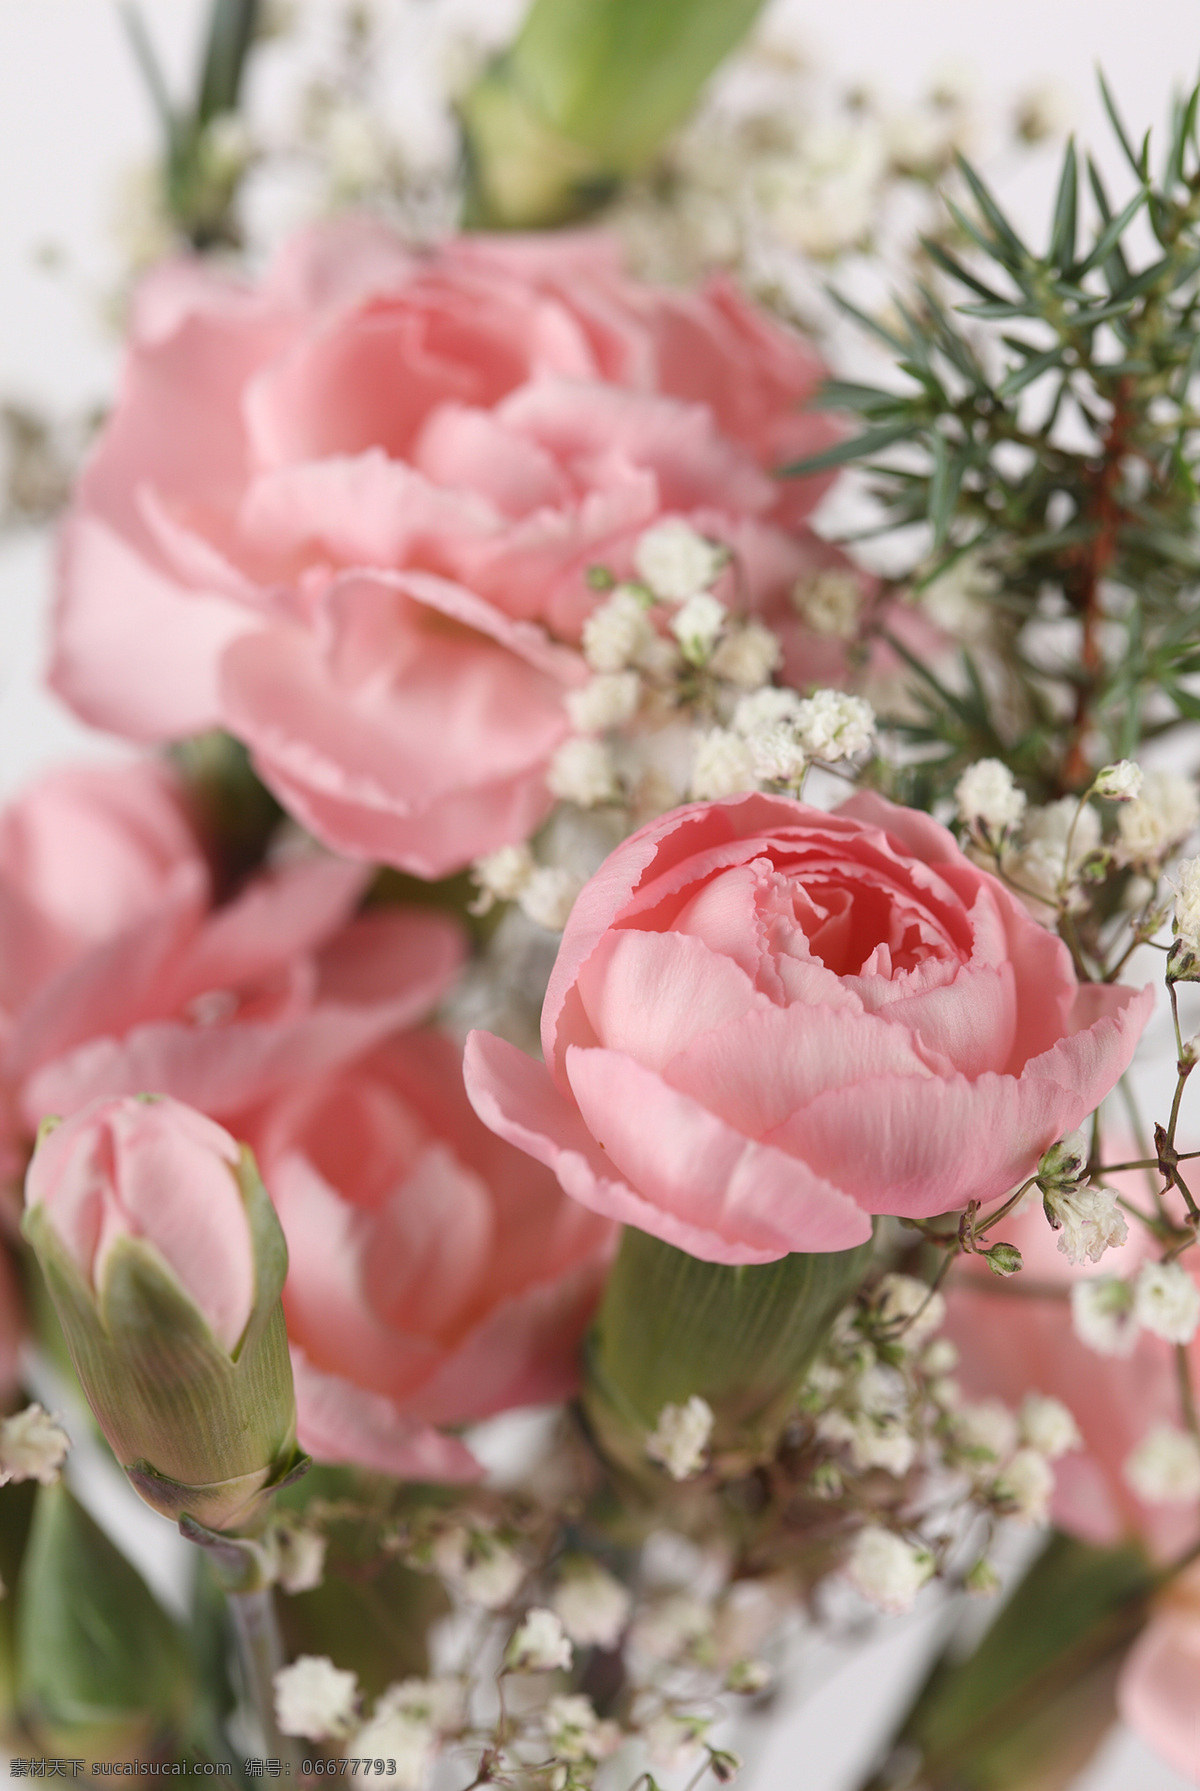 粉色 玫瑰 满天星 玫瑰花 植物花朵 美丽鲜花 漂亮花朵 花卉 鲜花摄影 花草树木 生物世界 白色